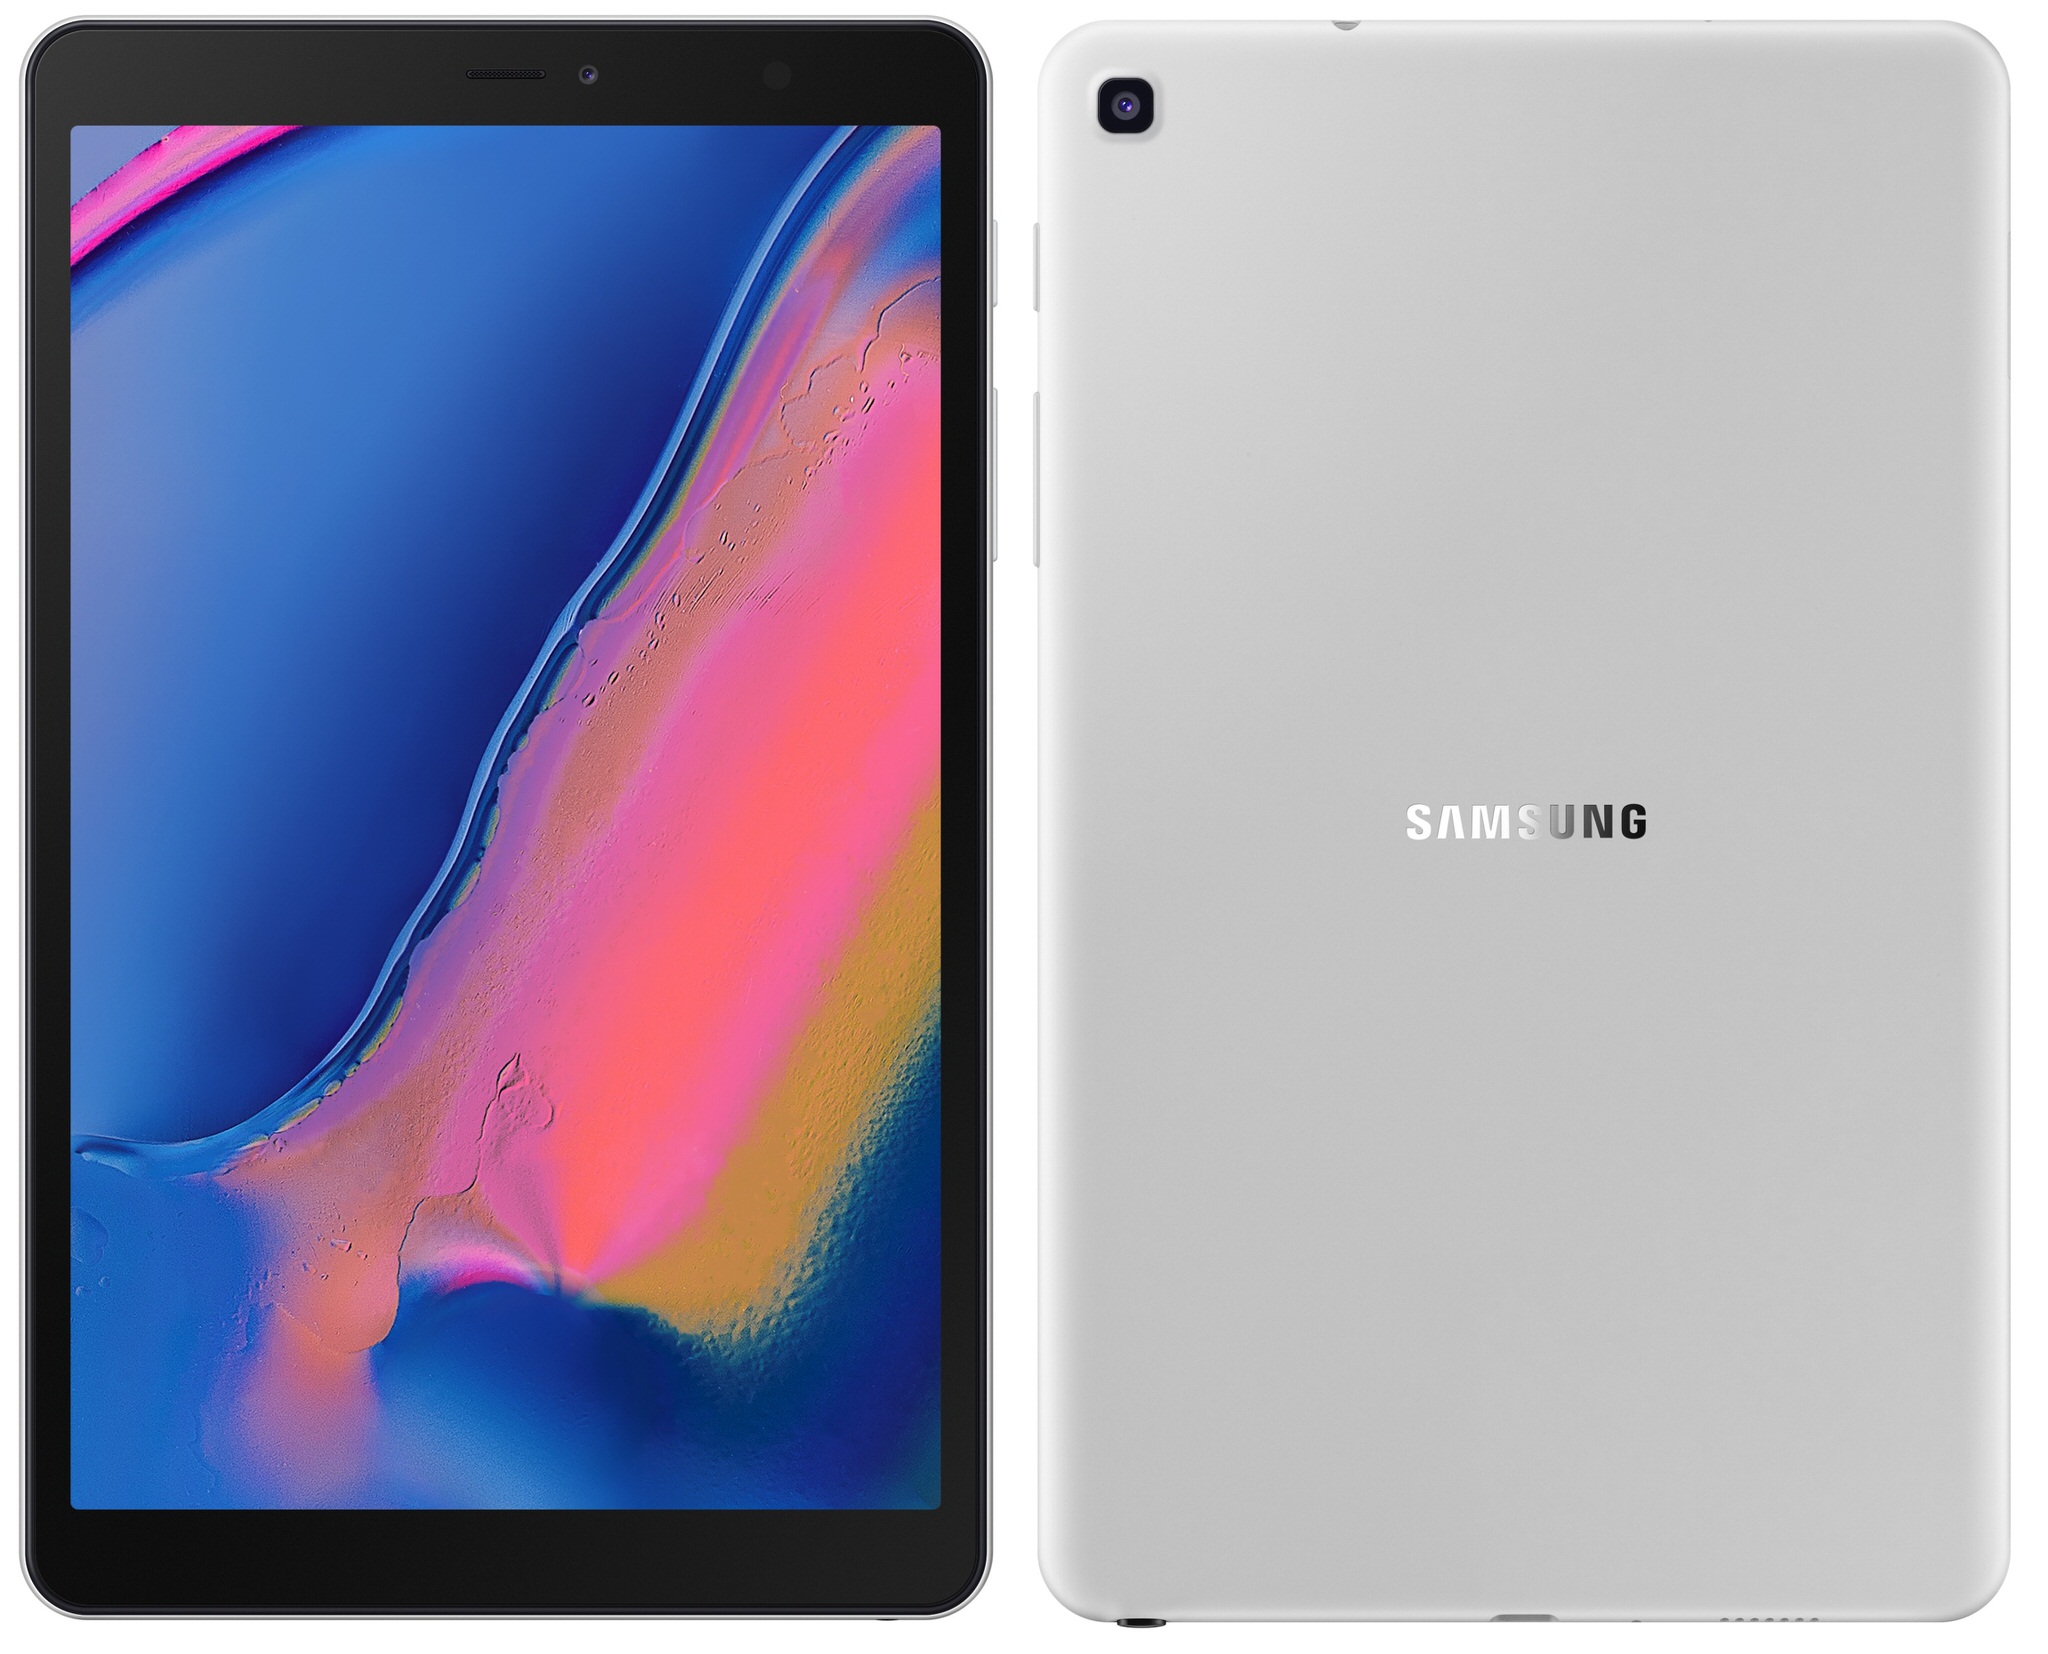 Samsung ra mắt bộ ba máy tính bảng mới: Galaxy Tab S5e, Galaxy Tab A 10.1 và Galaxy Tab A Plus 8